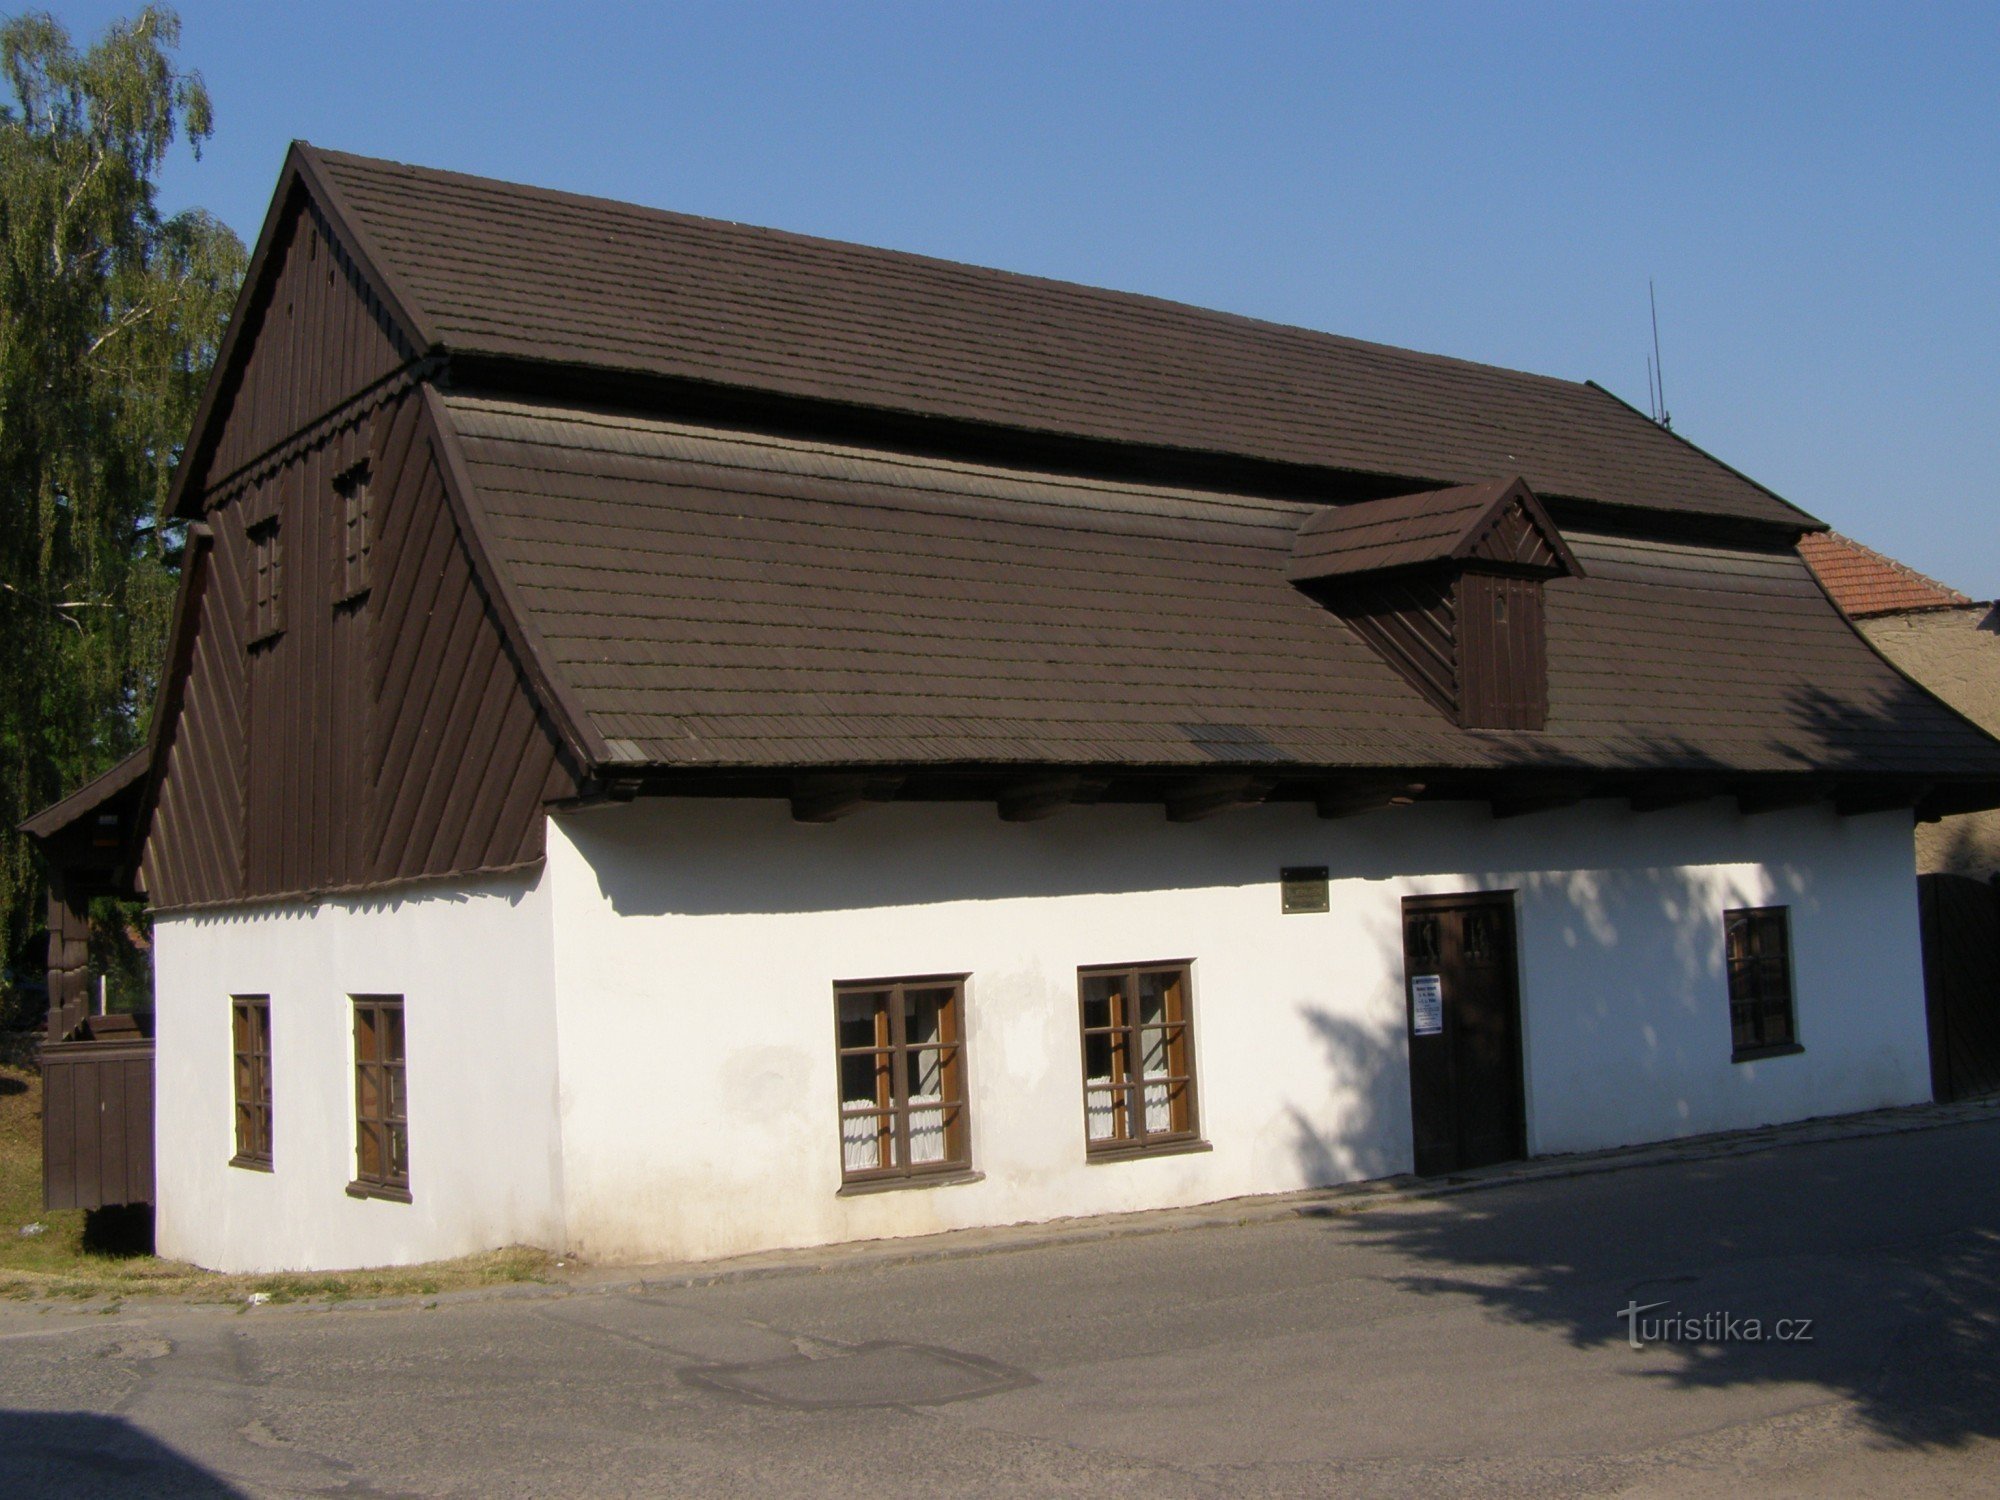 Dobruška - the birthplace of FLVěk (Heka)